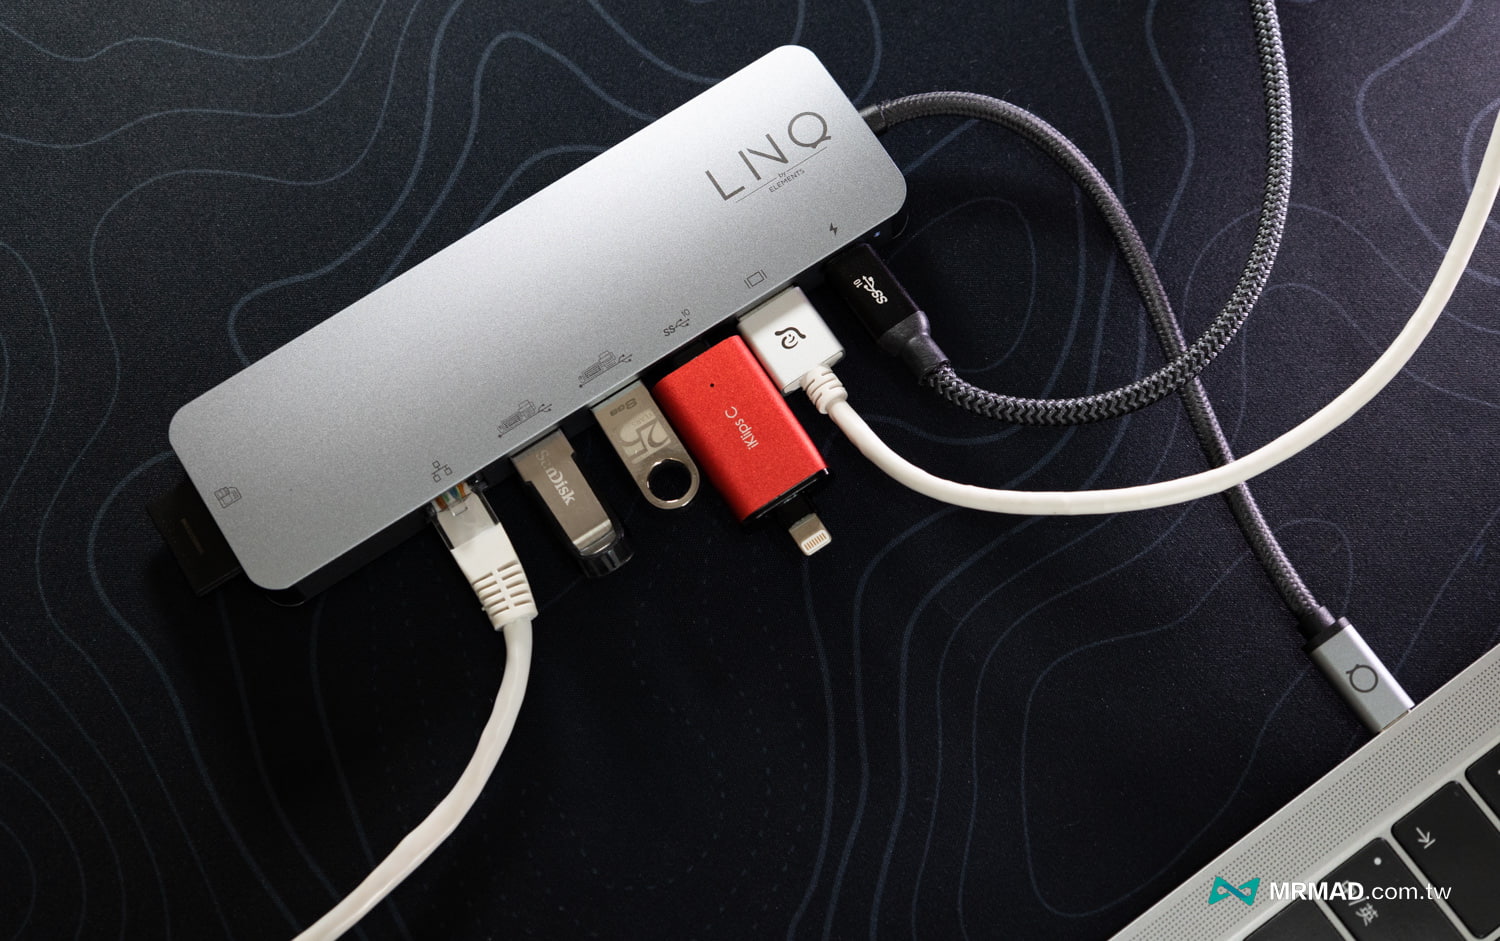 丹麥LINQ 9合1 SSD Pro Studio Hub 集線器開箱19